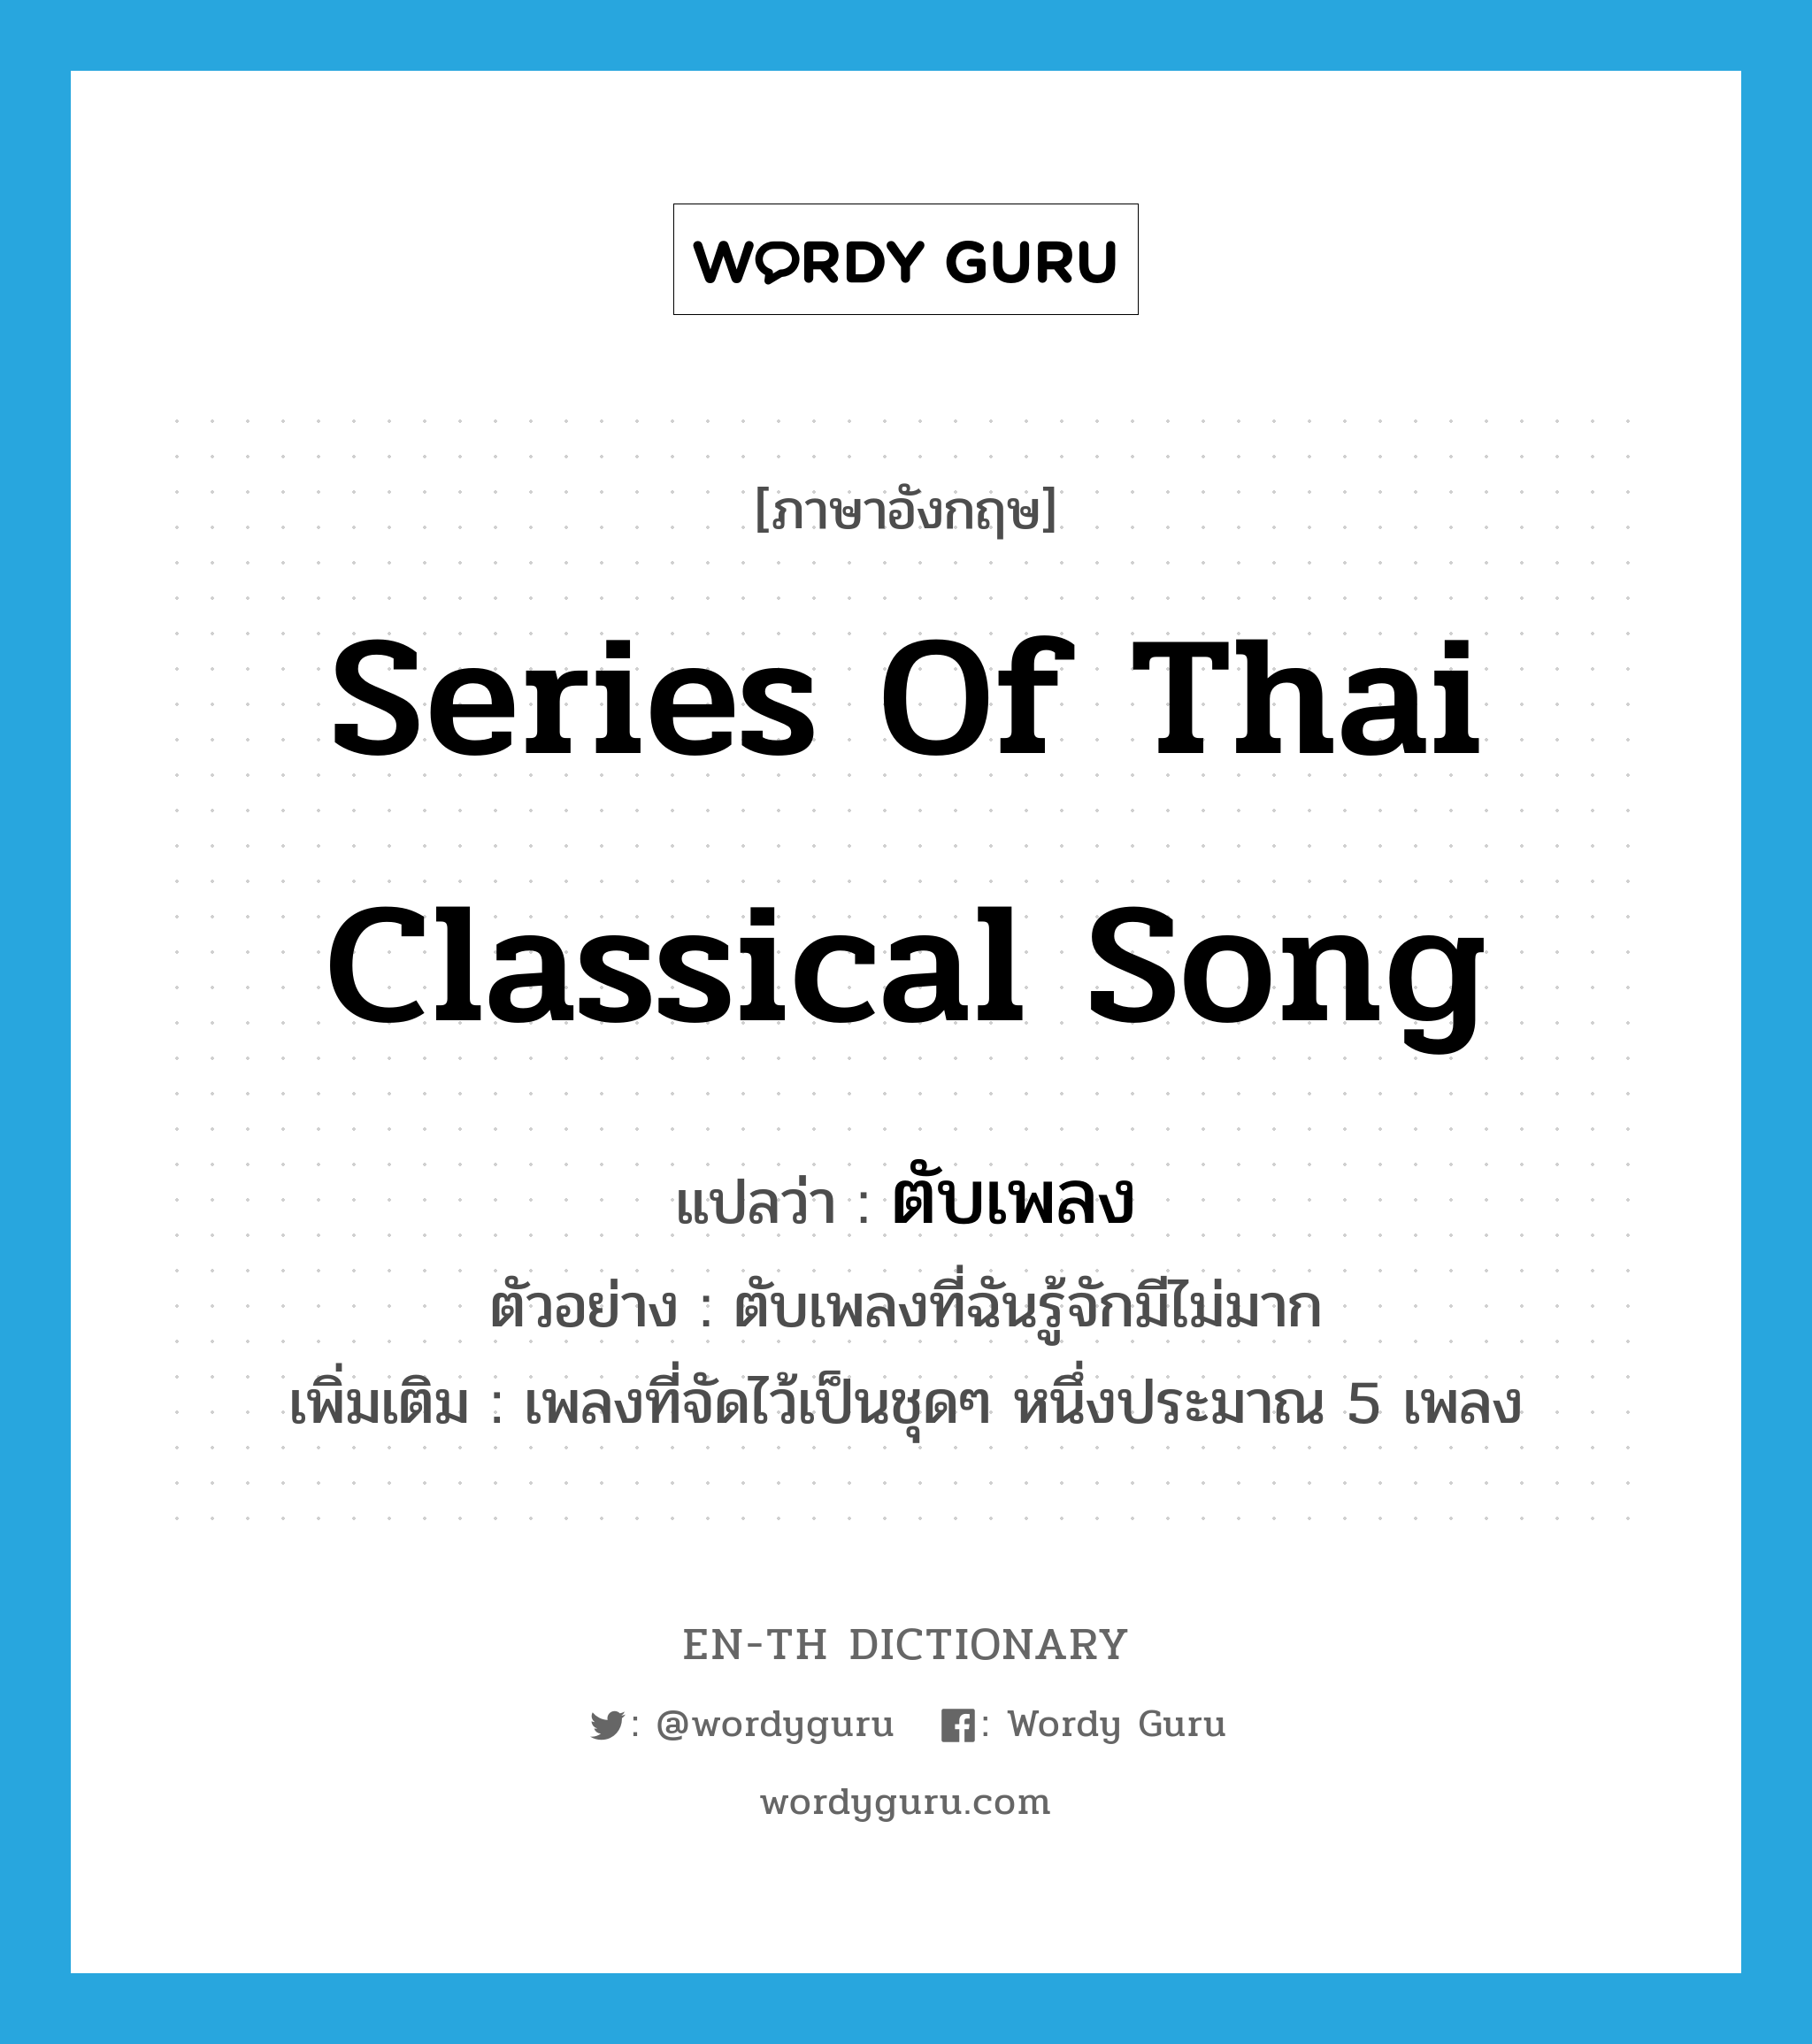 ตับเพลง ภาษาอังกฤษ?, คำศัพท์ภาษาอังกฤษ ตับเพลง แปลว่า series of Thai classical song ประเภท N ตัวอย่าง ตับเพลงที่ฉันรู้จักมีไม่มาก เพิ่มเติม เพลงที่จัดไว้เป็นชุดๆ หนึ่งประมาณ 5 เพลง หมวด N